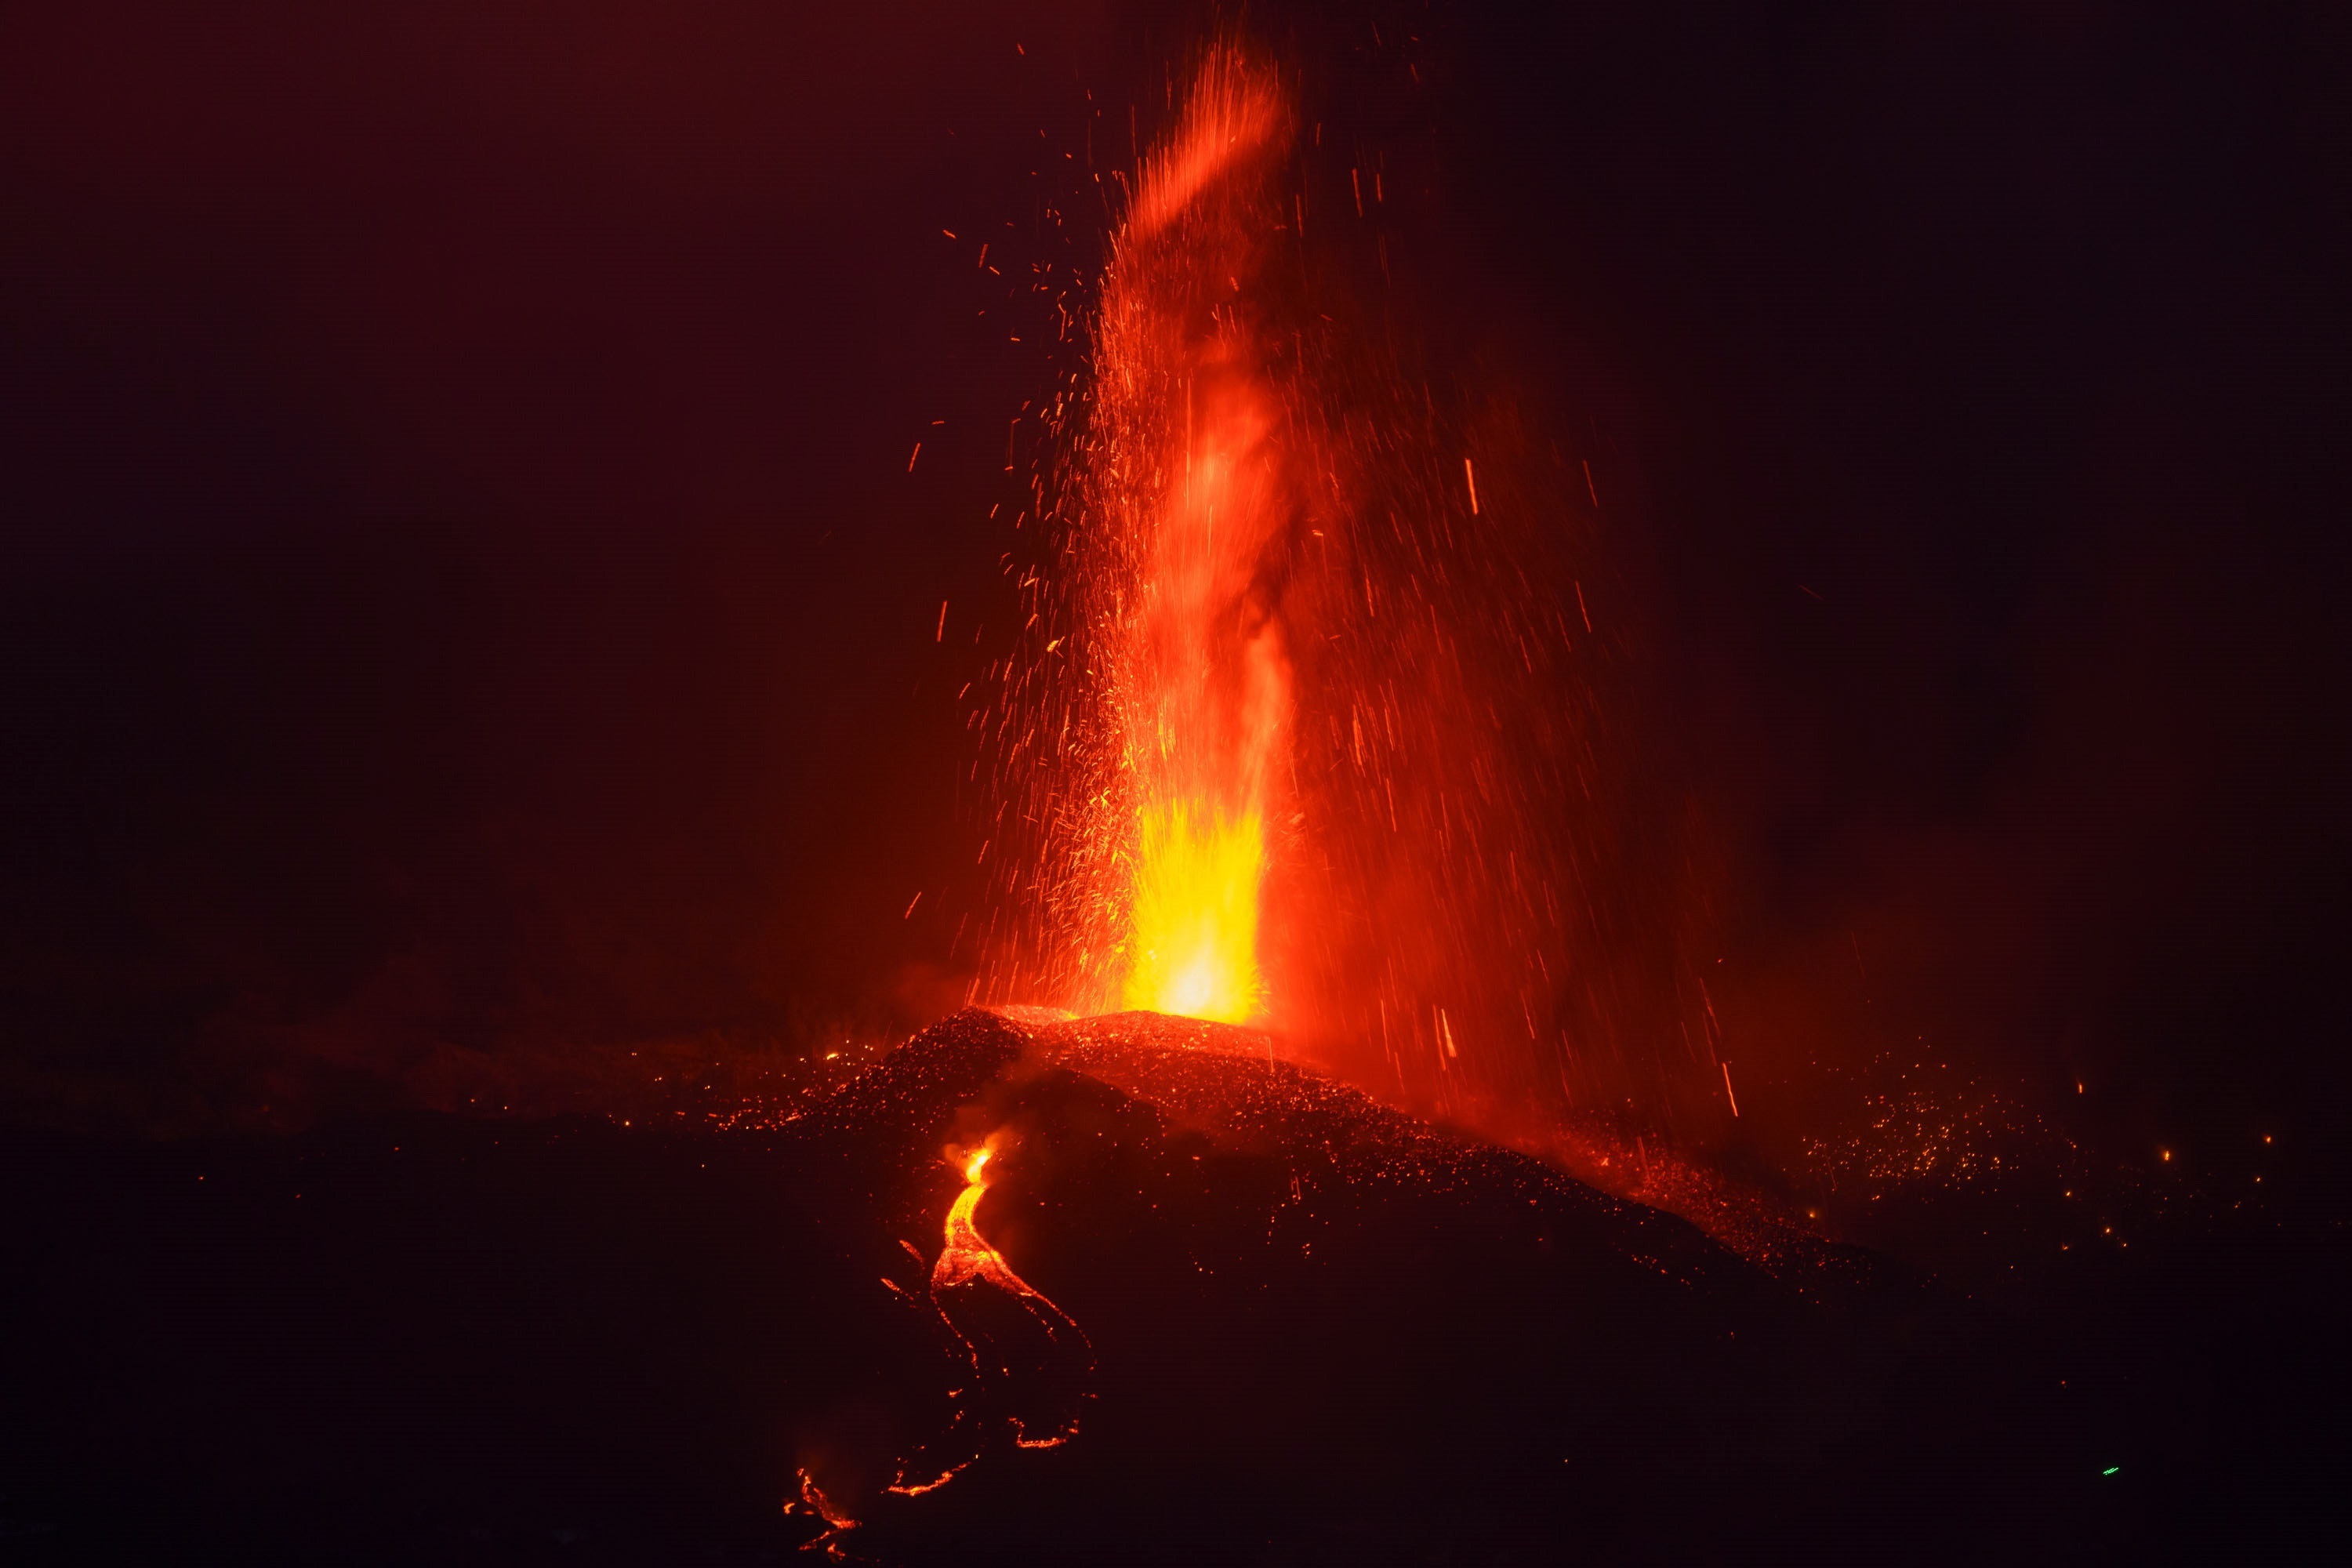 La erupción del volcán en La Palma ha desatado todo tipo de reacciones. (Foto Prensa Libre: EFE)